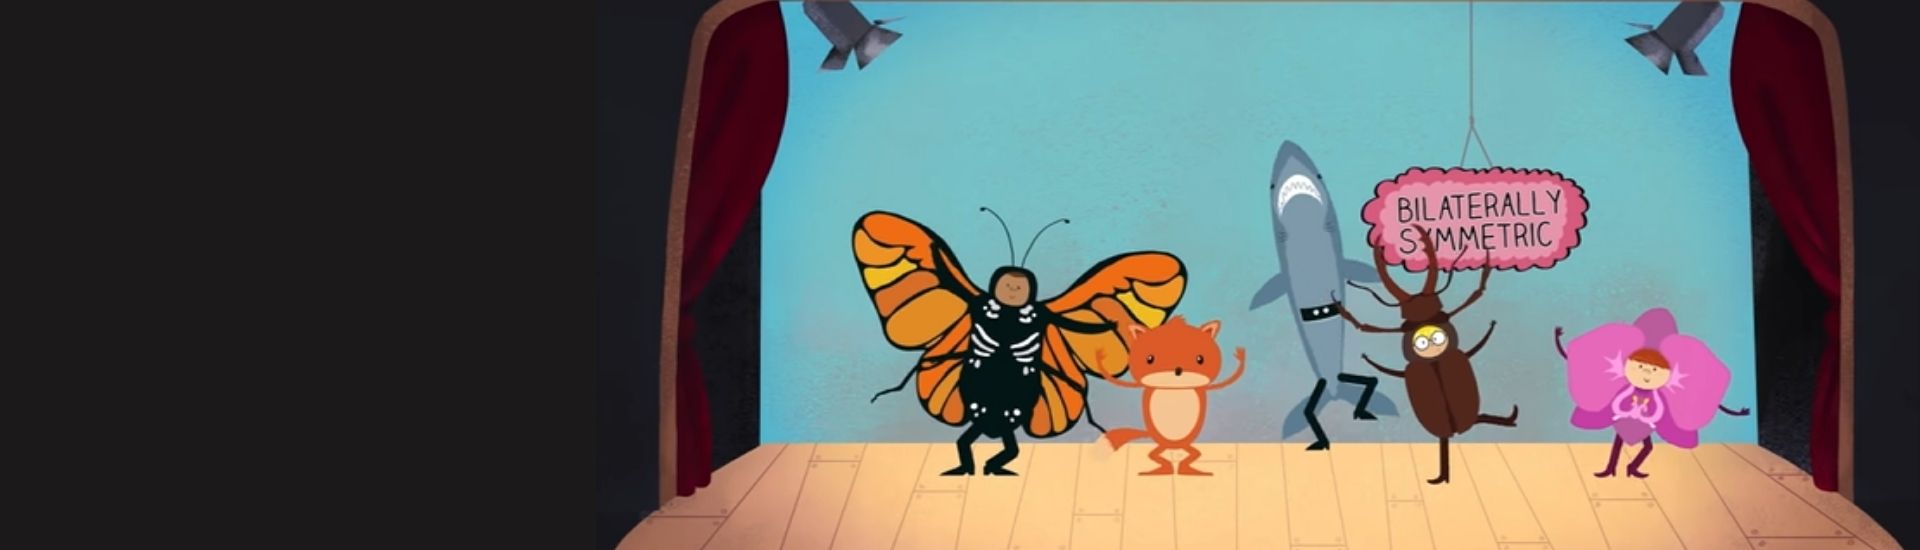 En la imagen se ve la ilustración de un teatro con muchos animales que poseen simetría bilateral, como mariposas y tiburones. Es una parte del video de la charla TED.